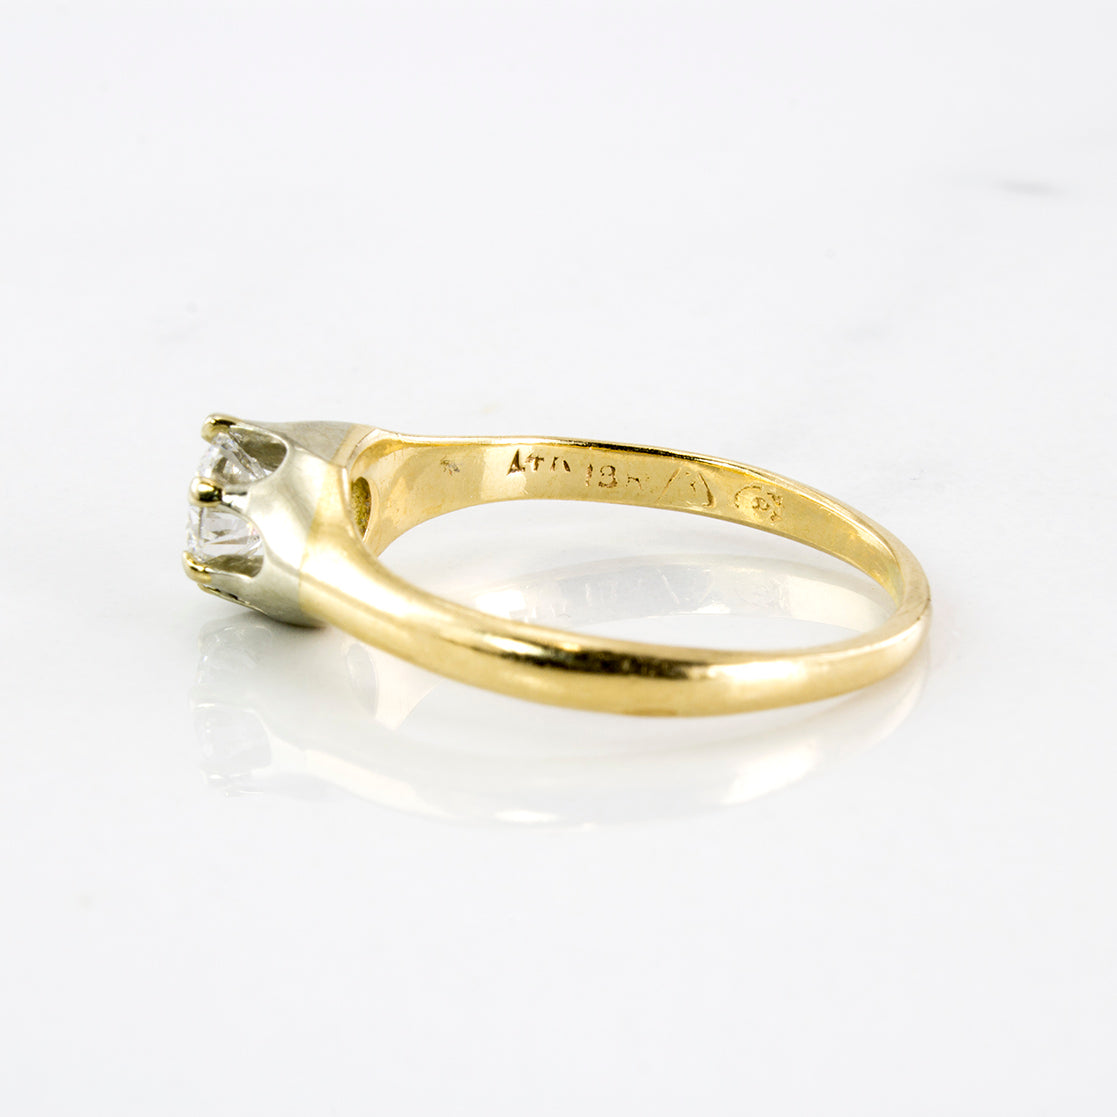 1930's Solitaire Diamond Ring | 0.48 ctw | SZ 6.75 |